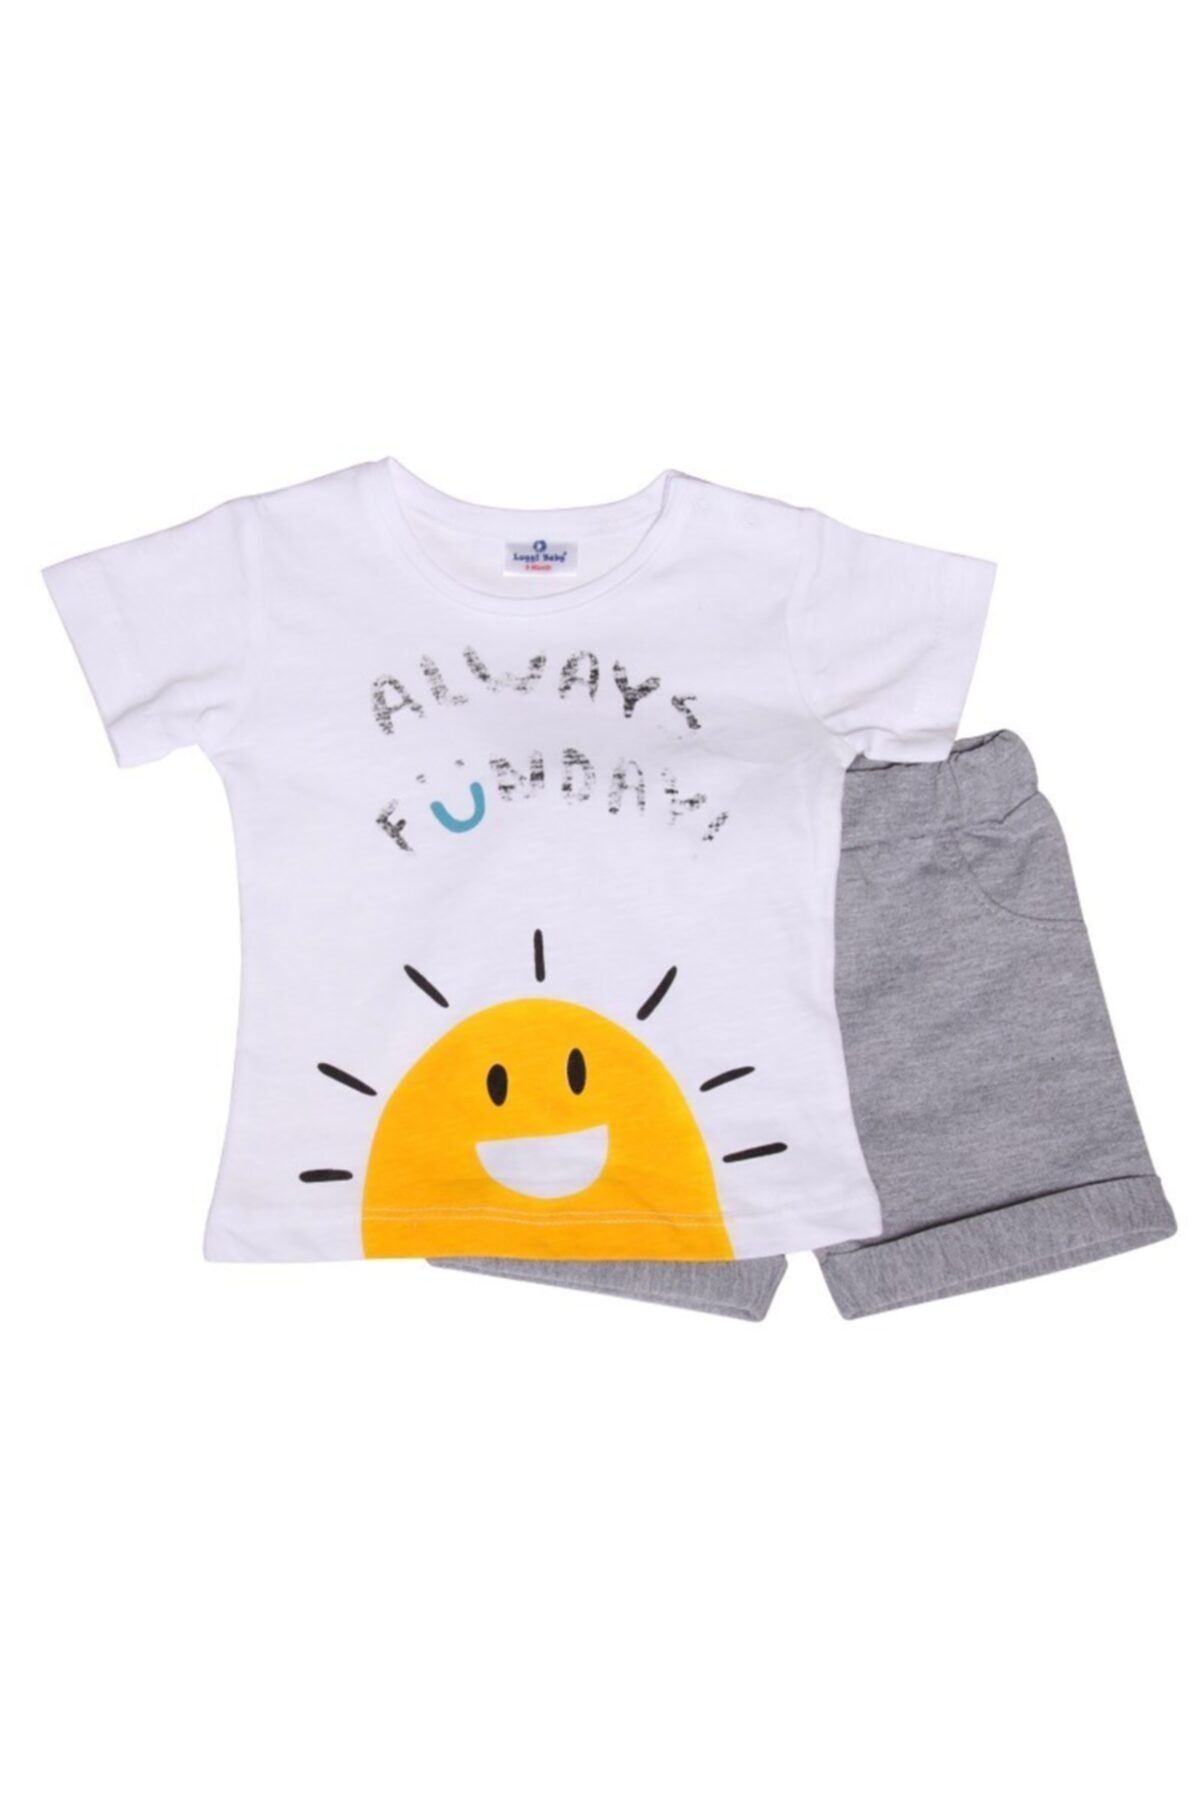 Luggi Baby Erkek Güneş Beyaz Kısa Kollu T-shirt & Gri Şort Takım Lgb-5120-3